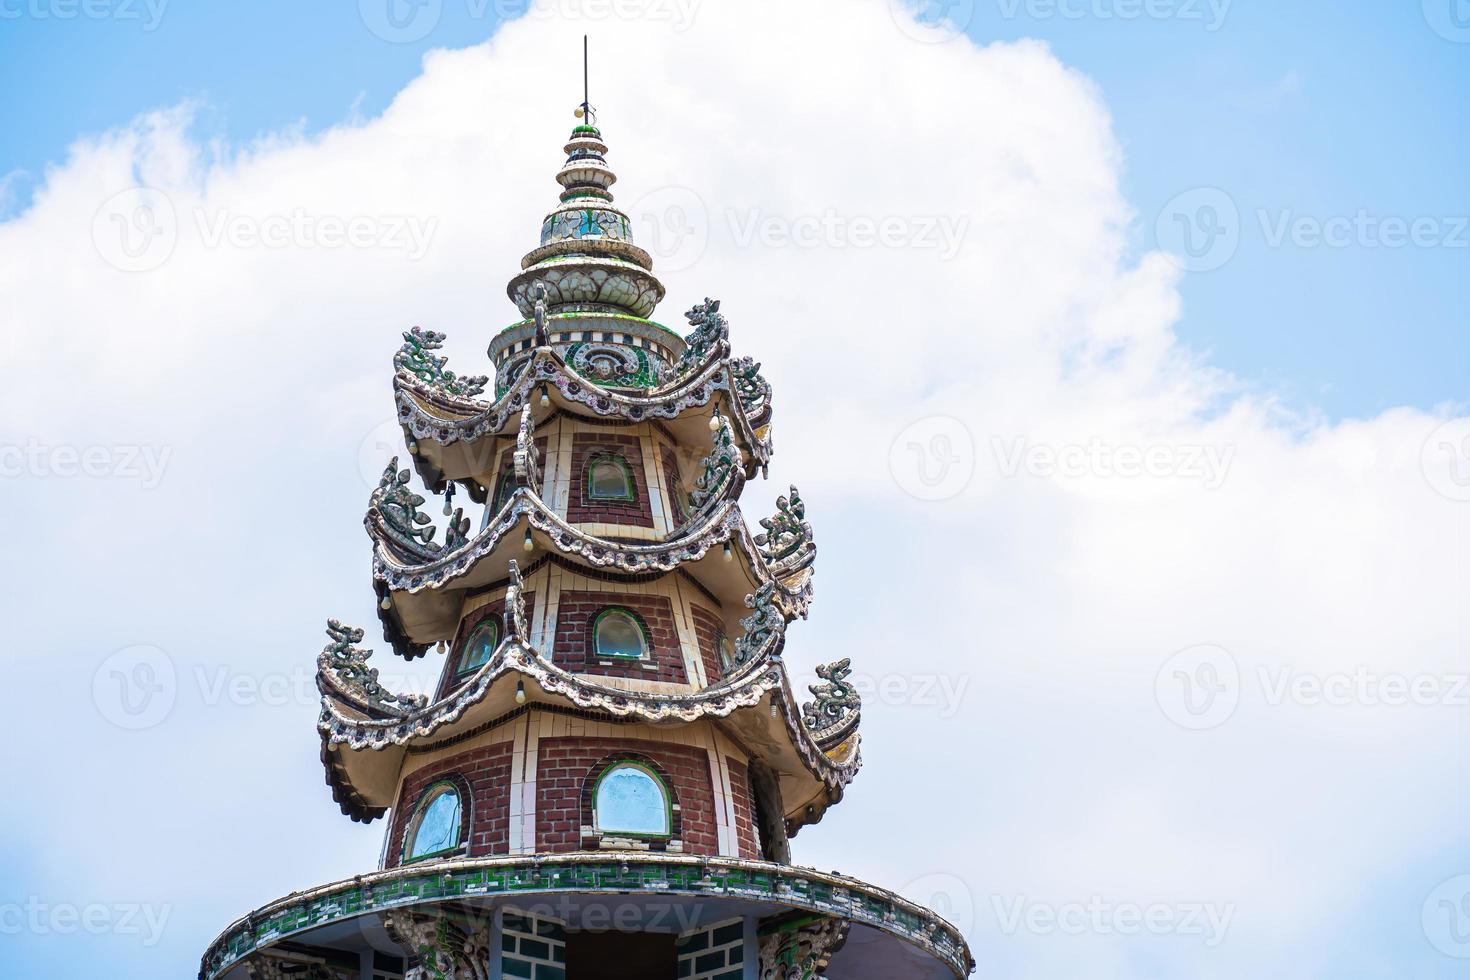 pagoda linh phuoc en da lat, vietnam. el famoso monumento de dalat, el templo de cristal de porcelana budista. pagoda linh phuoc en dalat vietnam también llamada pagoda del dragón. foto